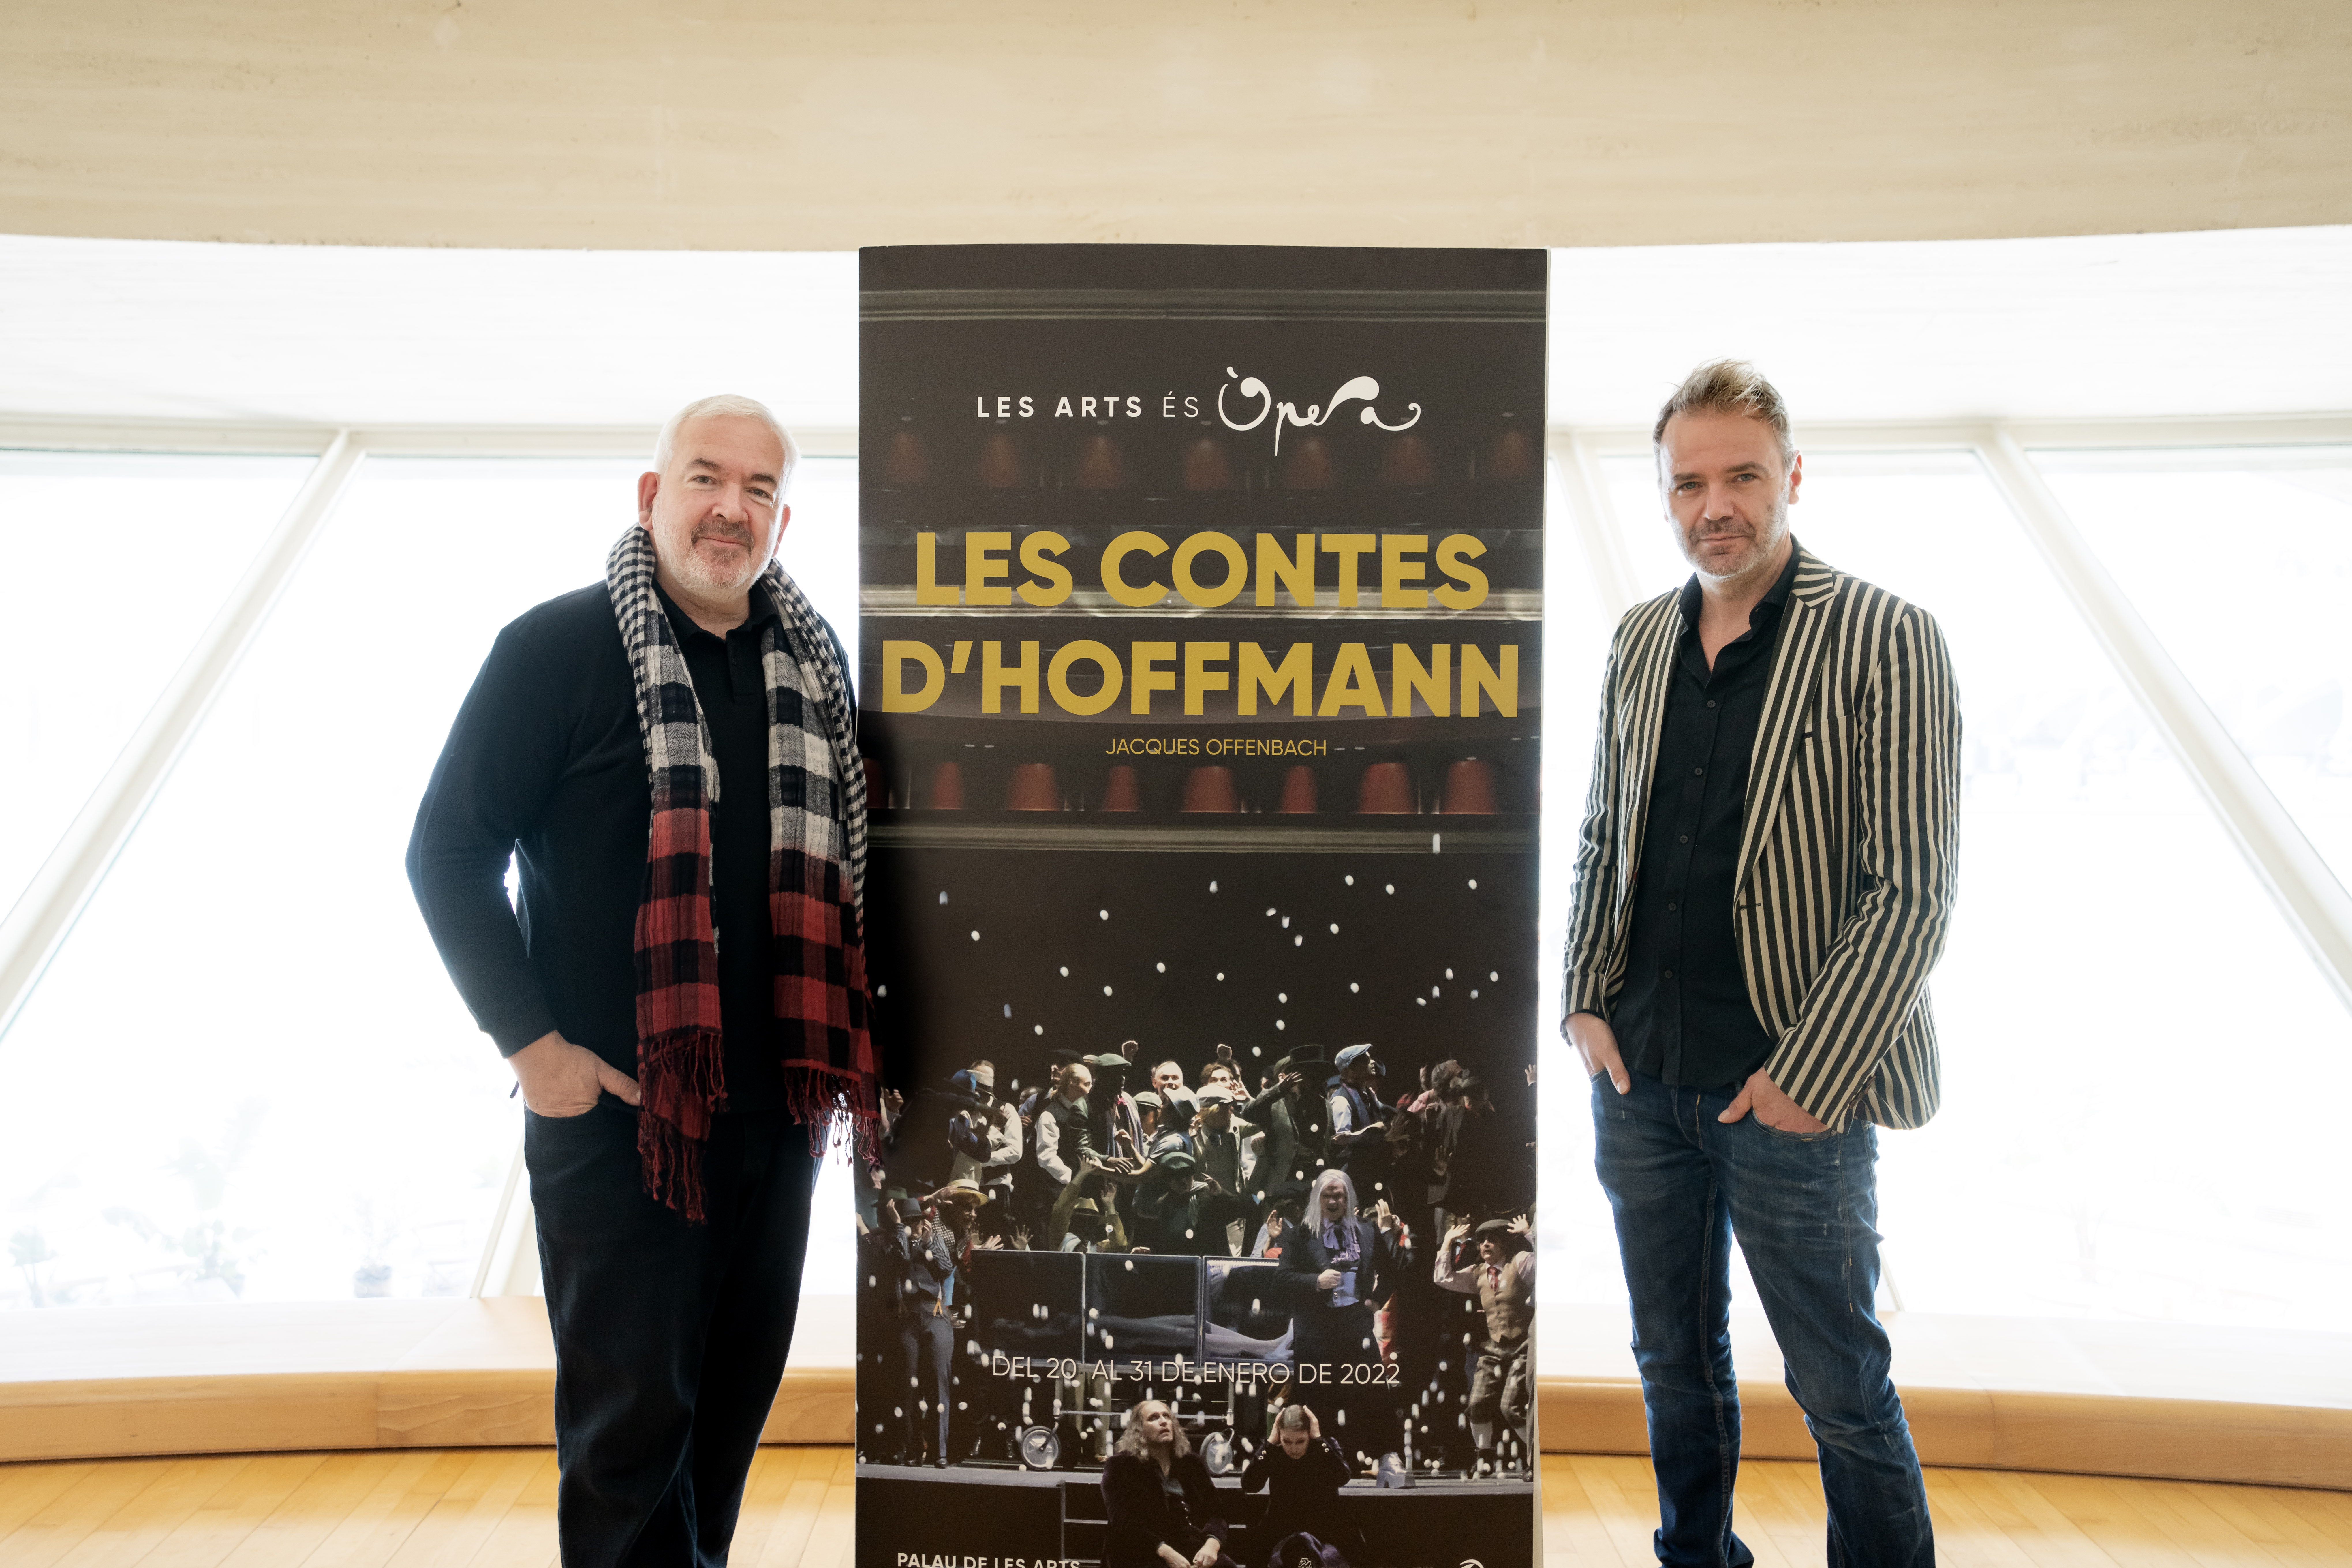 Les Arts estrena "Les contes d"Hoffmann" amb direcció musical de Marc Minkowski i posada en escena de Johannes Erath